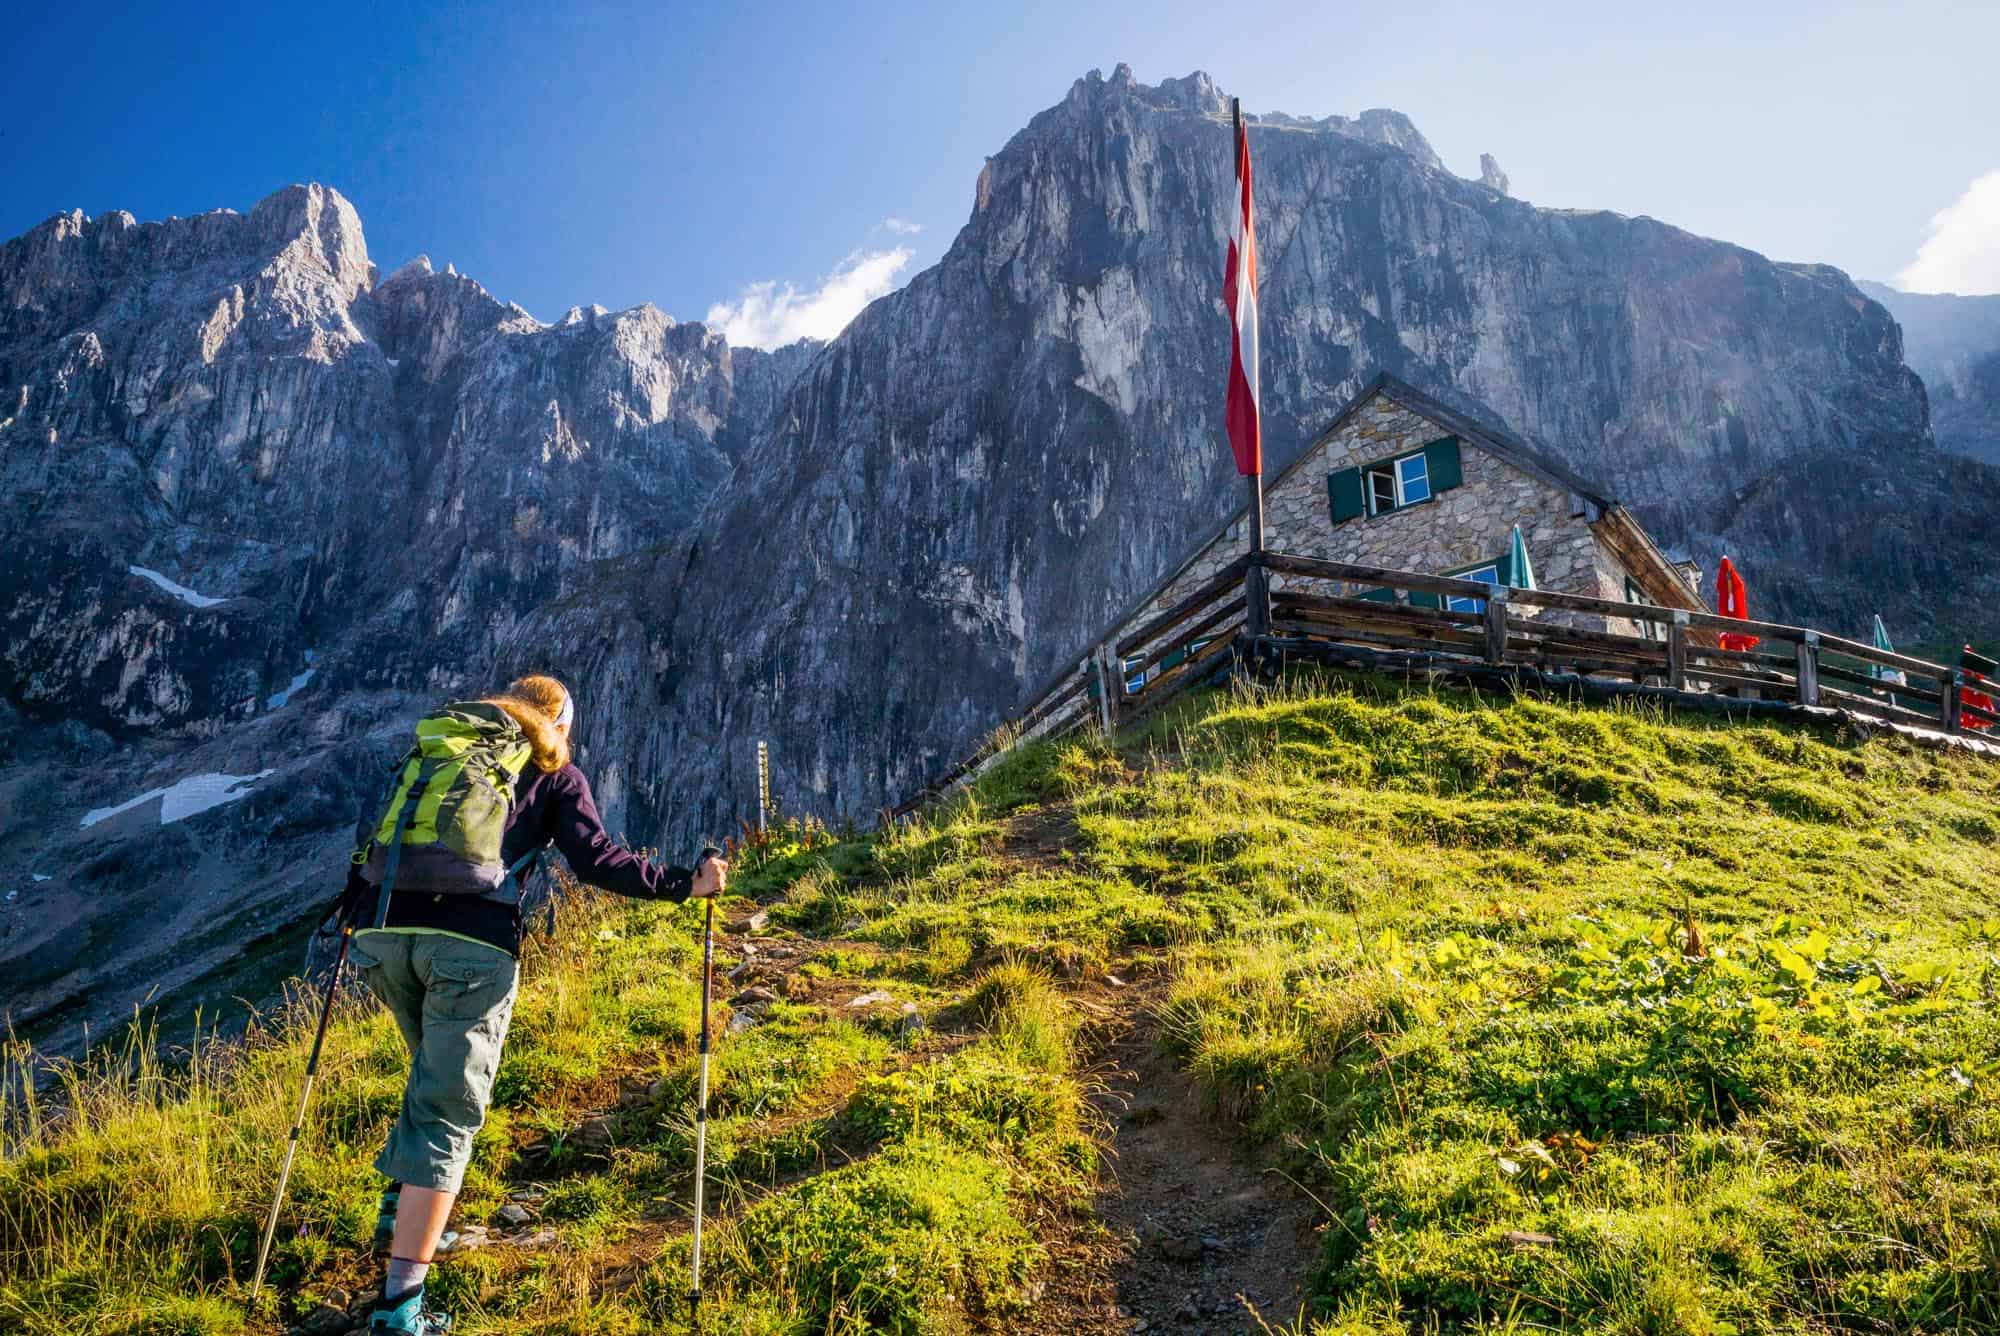 Trail Five huts path to Südwandhütte